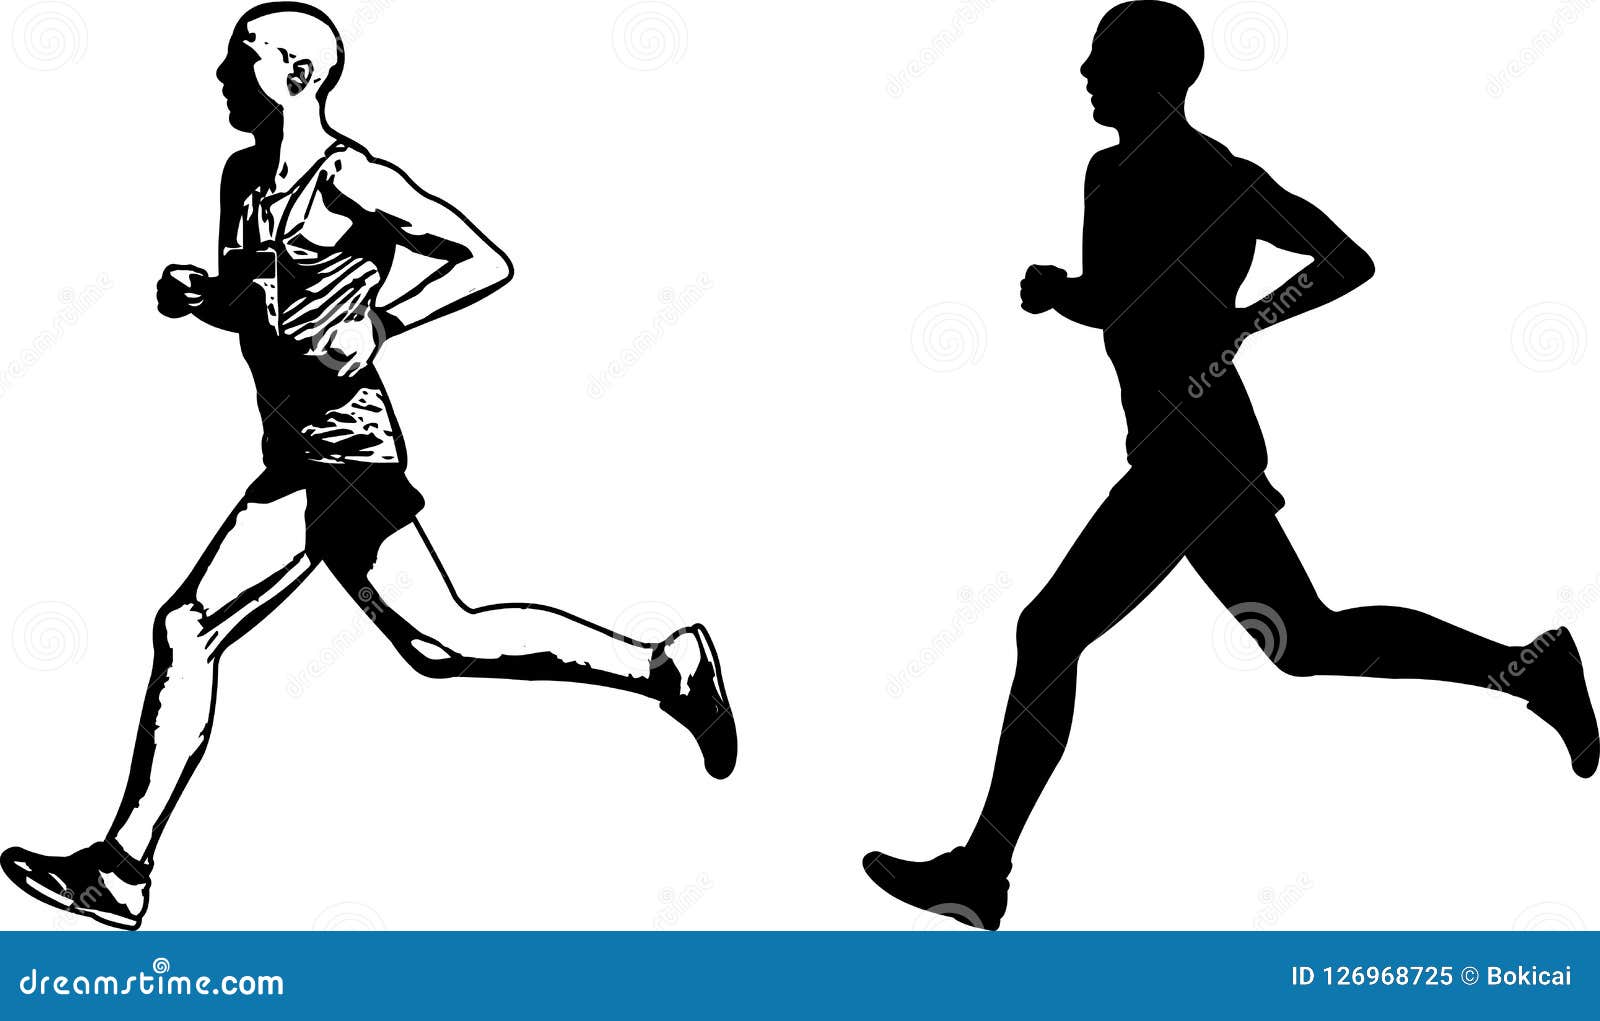 Silhouette of running athletes sketch drawing of running player line art  illustration runner taking start for race Stock Vector  Adobe Stock